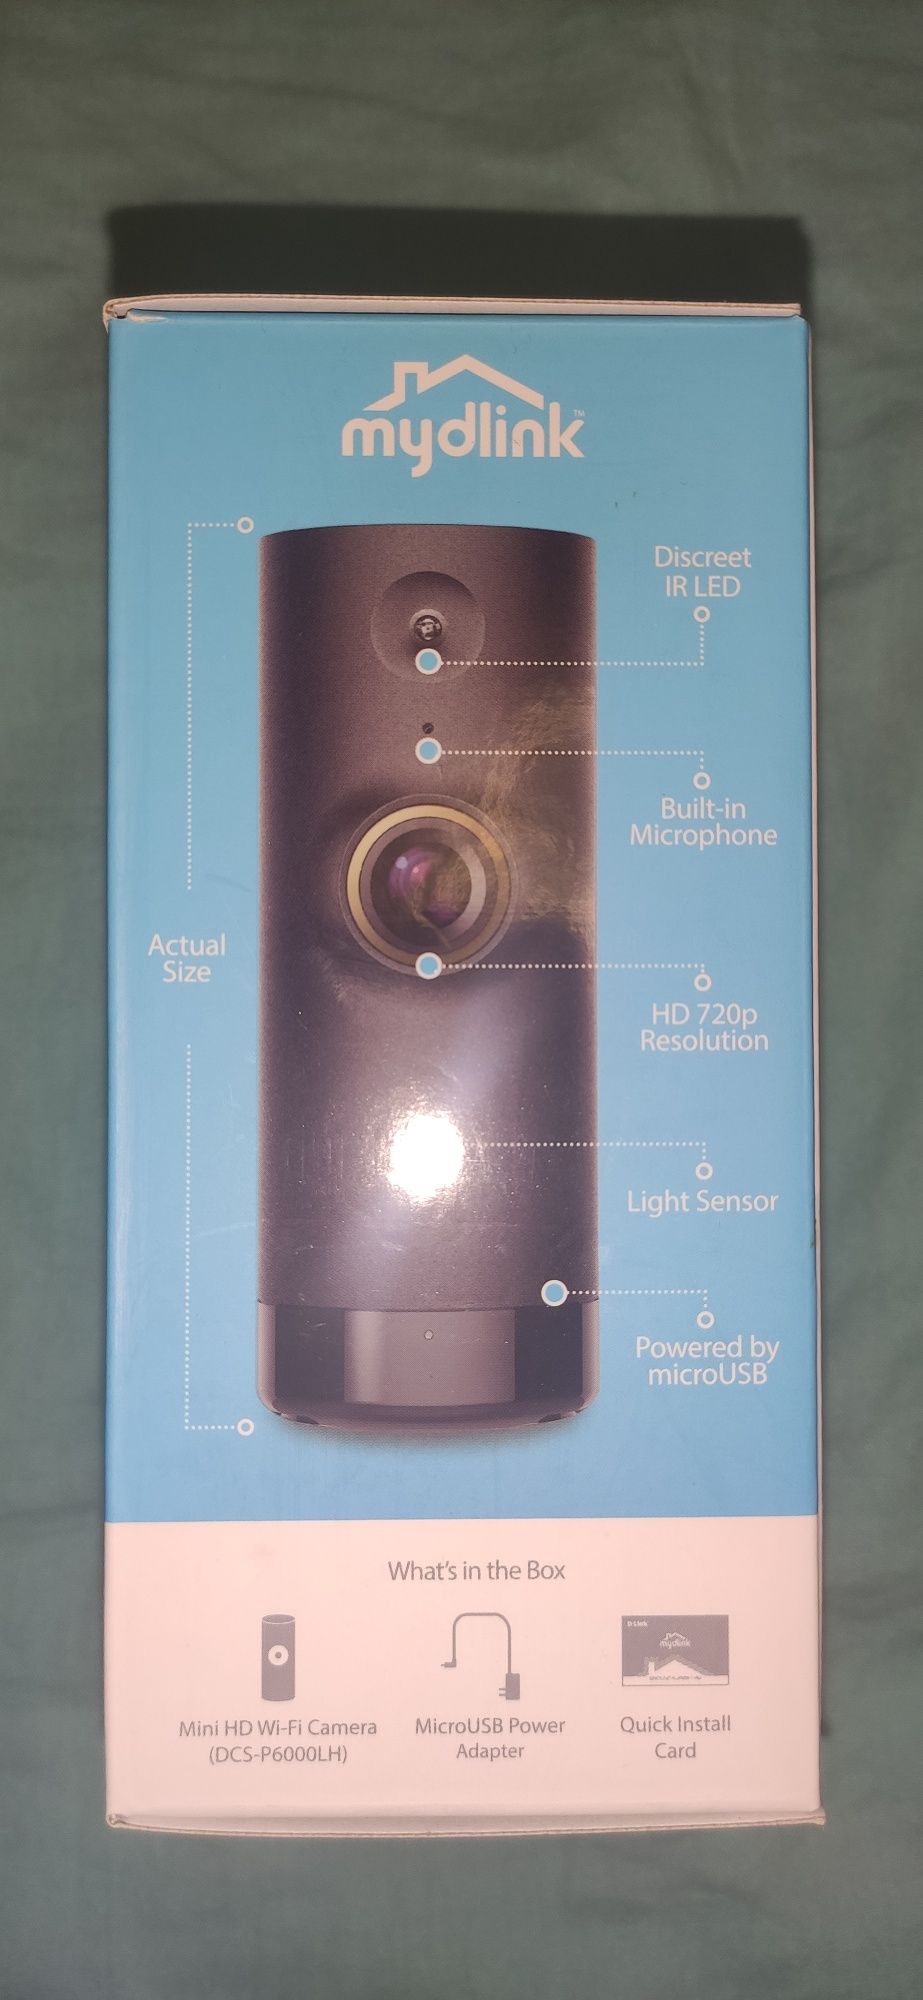 Mini HD WI-FI camera